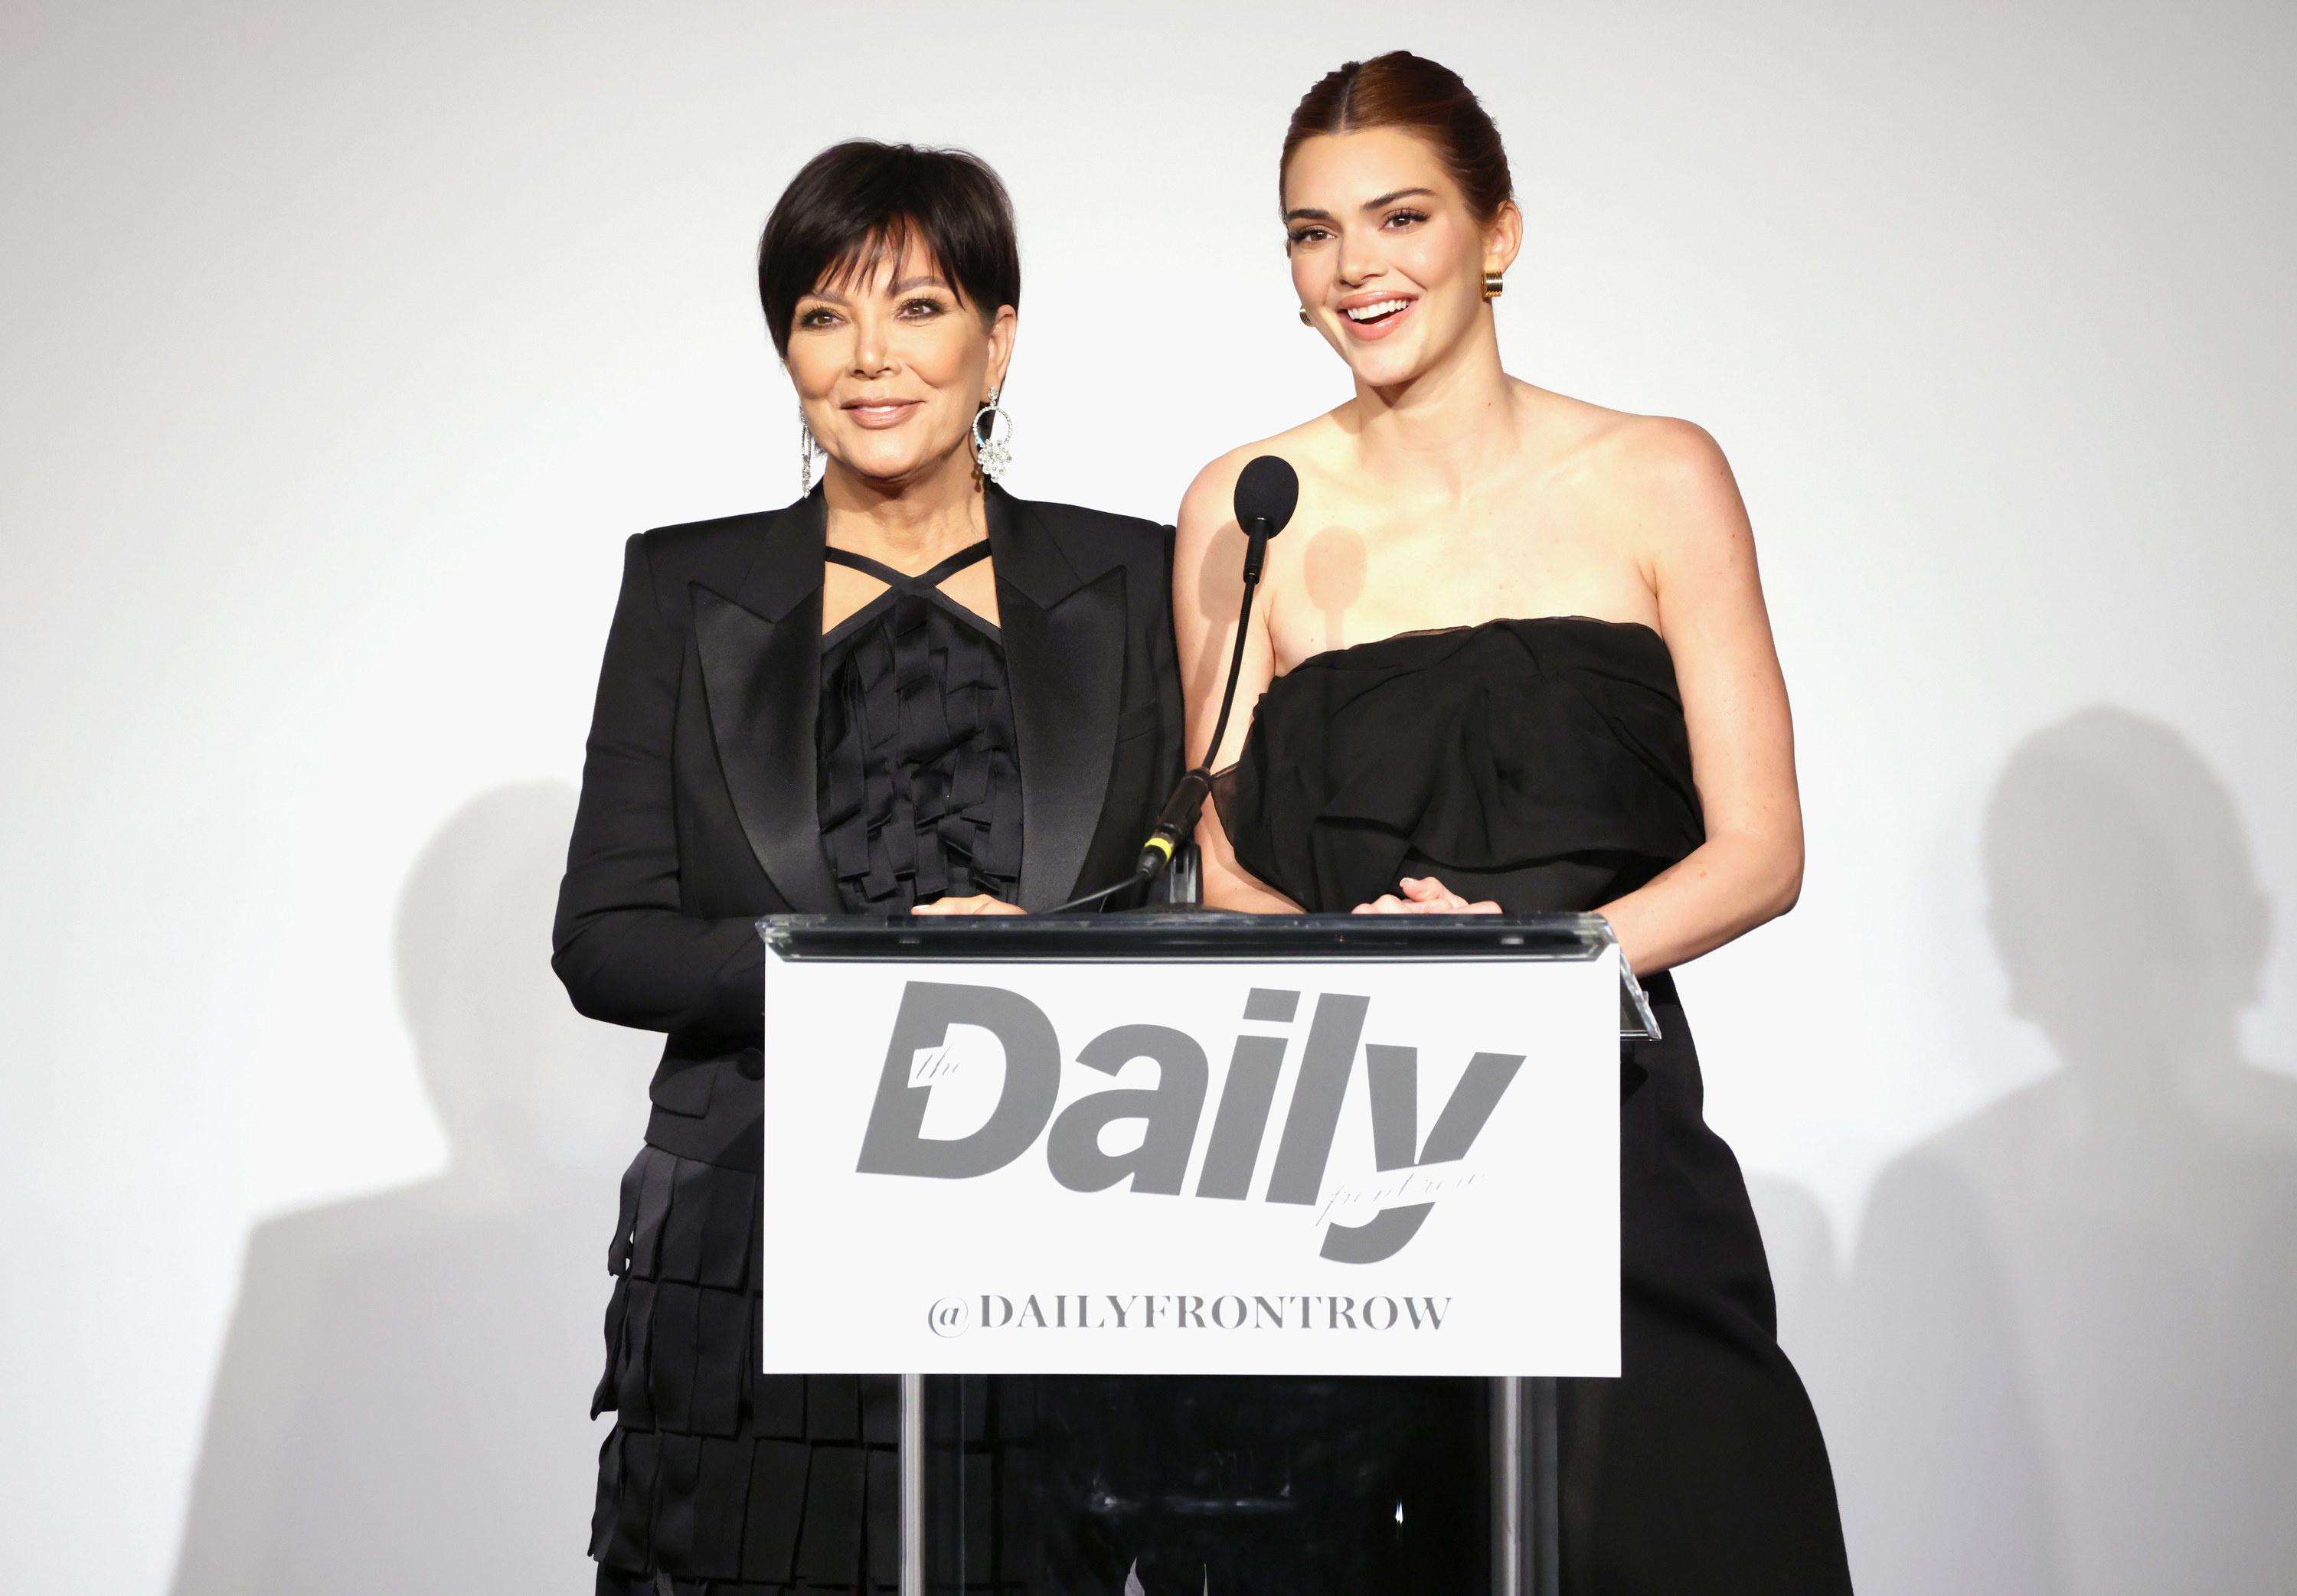 Closeup of Kris Jenner and Kendall Jenner at a podium